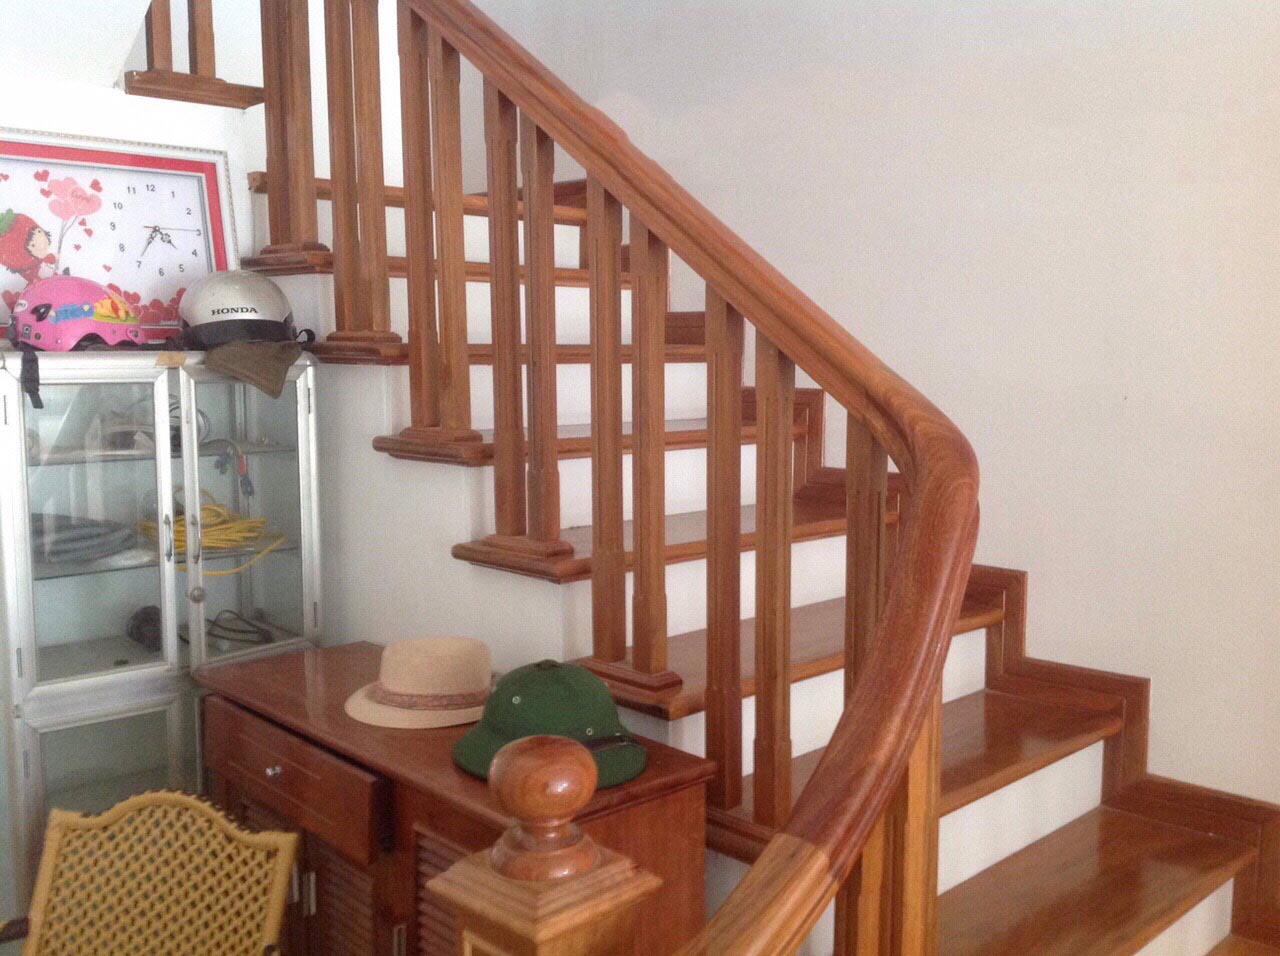 Tổng hợp các mẫu cầu thang gỗ đẹp nhất dành cho ngôi nhà của bạn - [Kích thước hình ảnh: 1280x956 px]